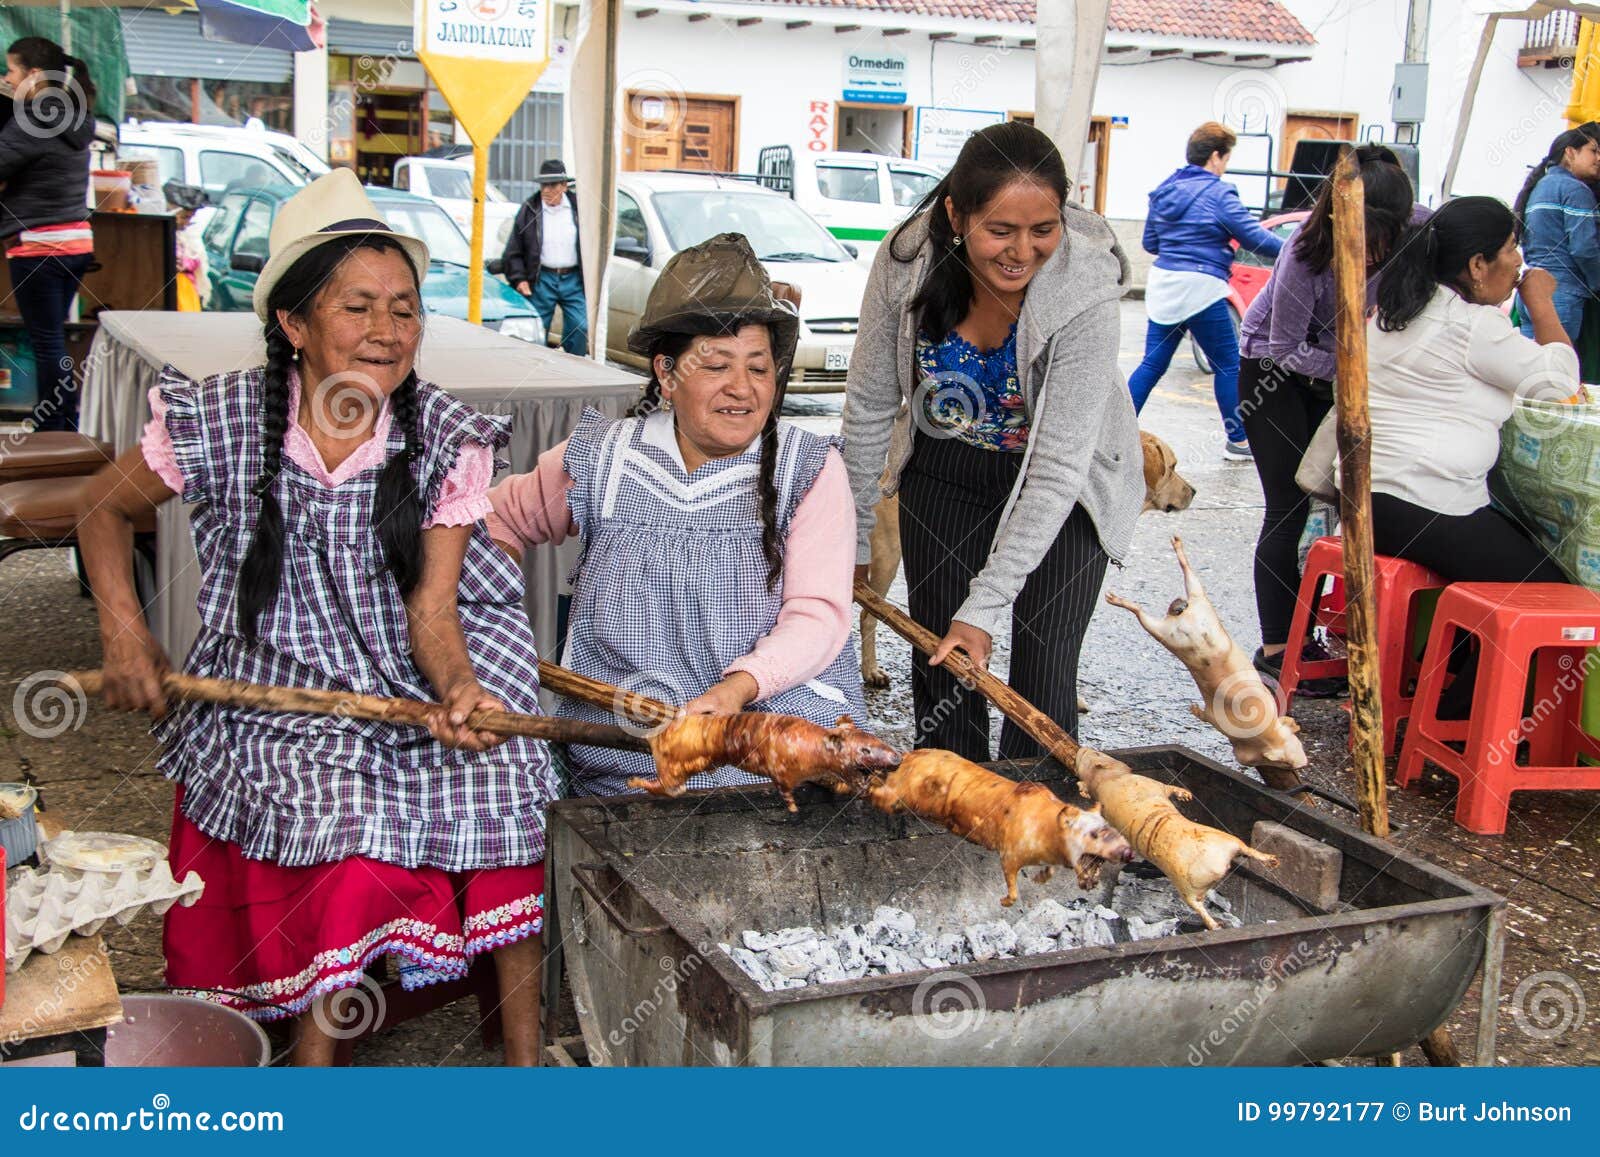 gualaceo-ecuador-mar-vendors-prepare-cuy-guinea-pig-lunch-vendors-prepare-cuy-guinea-pig-lunch-99792177.jpg